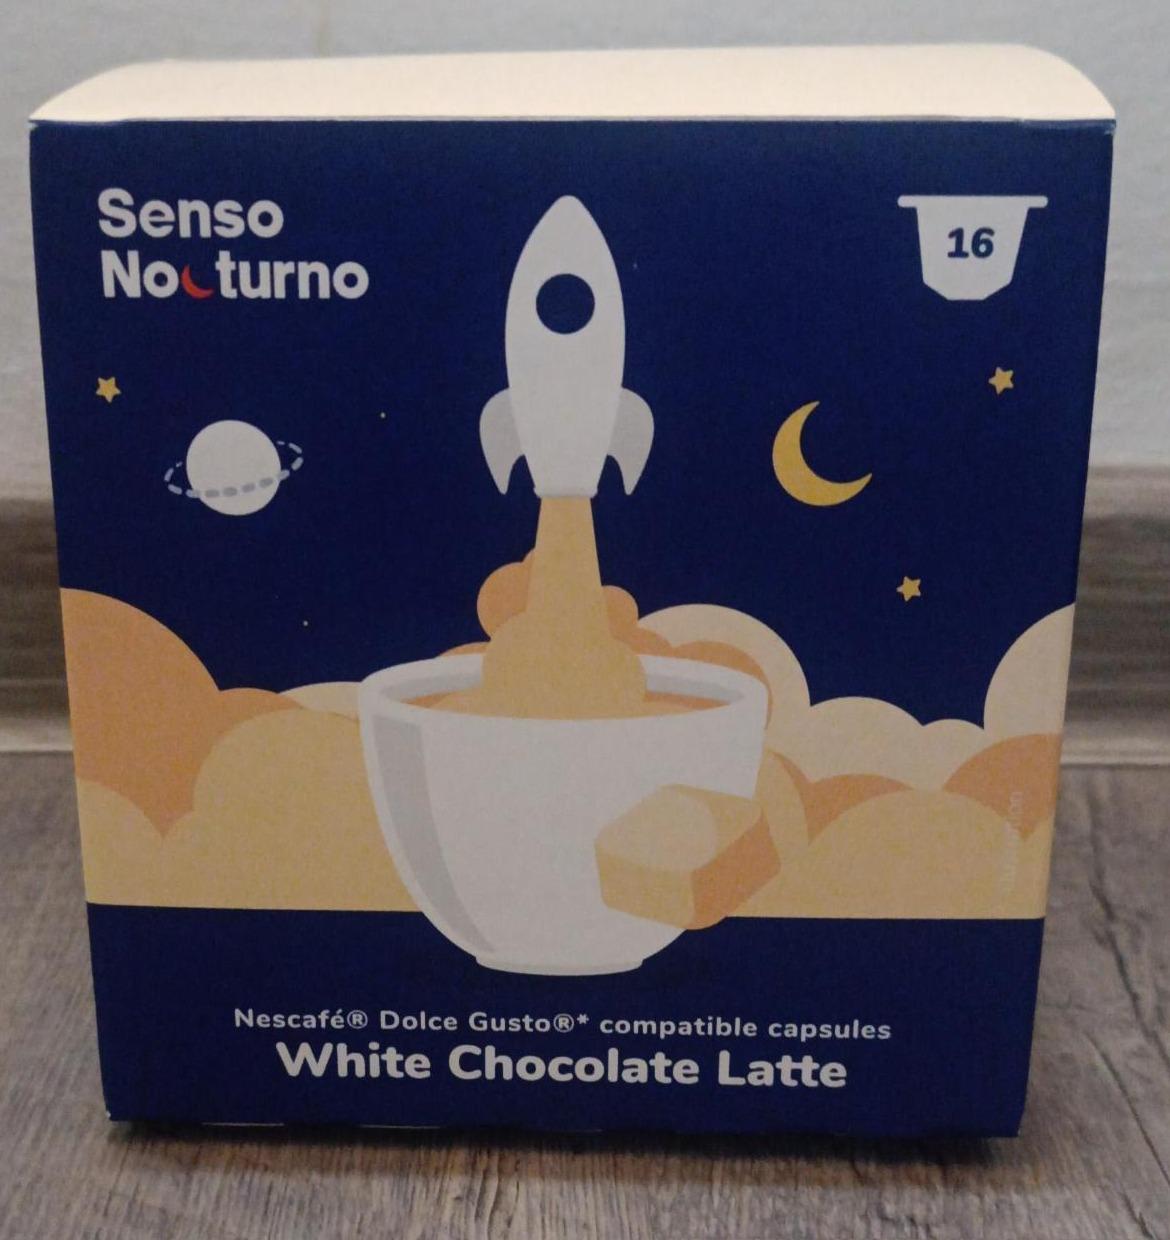 Fotografie - White Chocolate Latte Senso Nocturno Nescafé Dolce Gusto